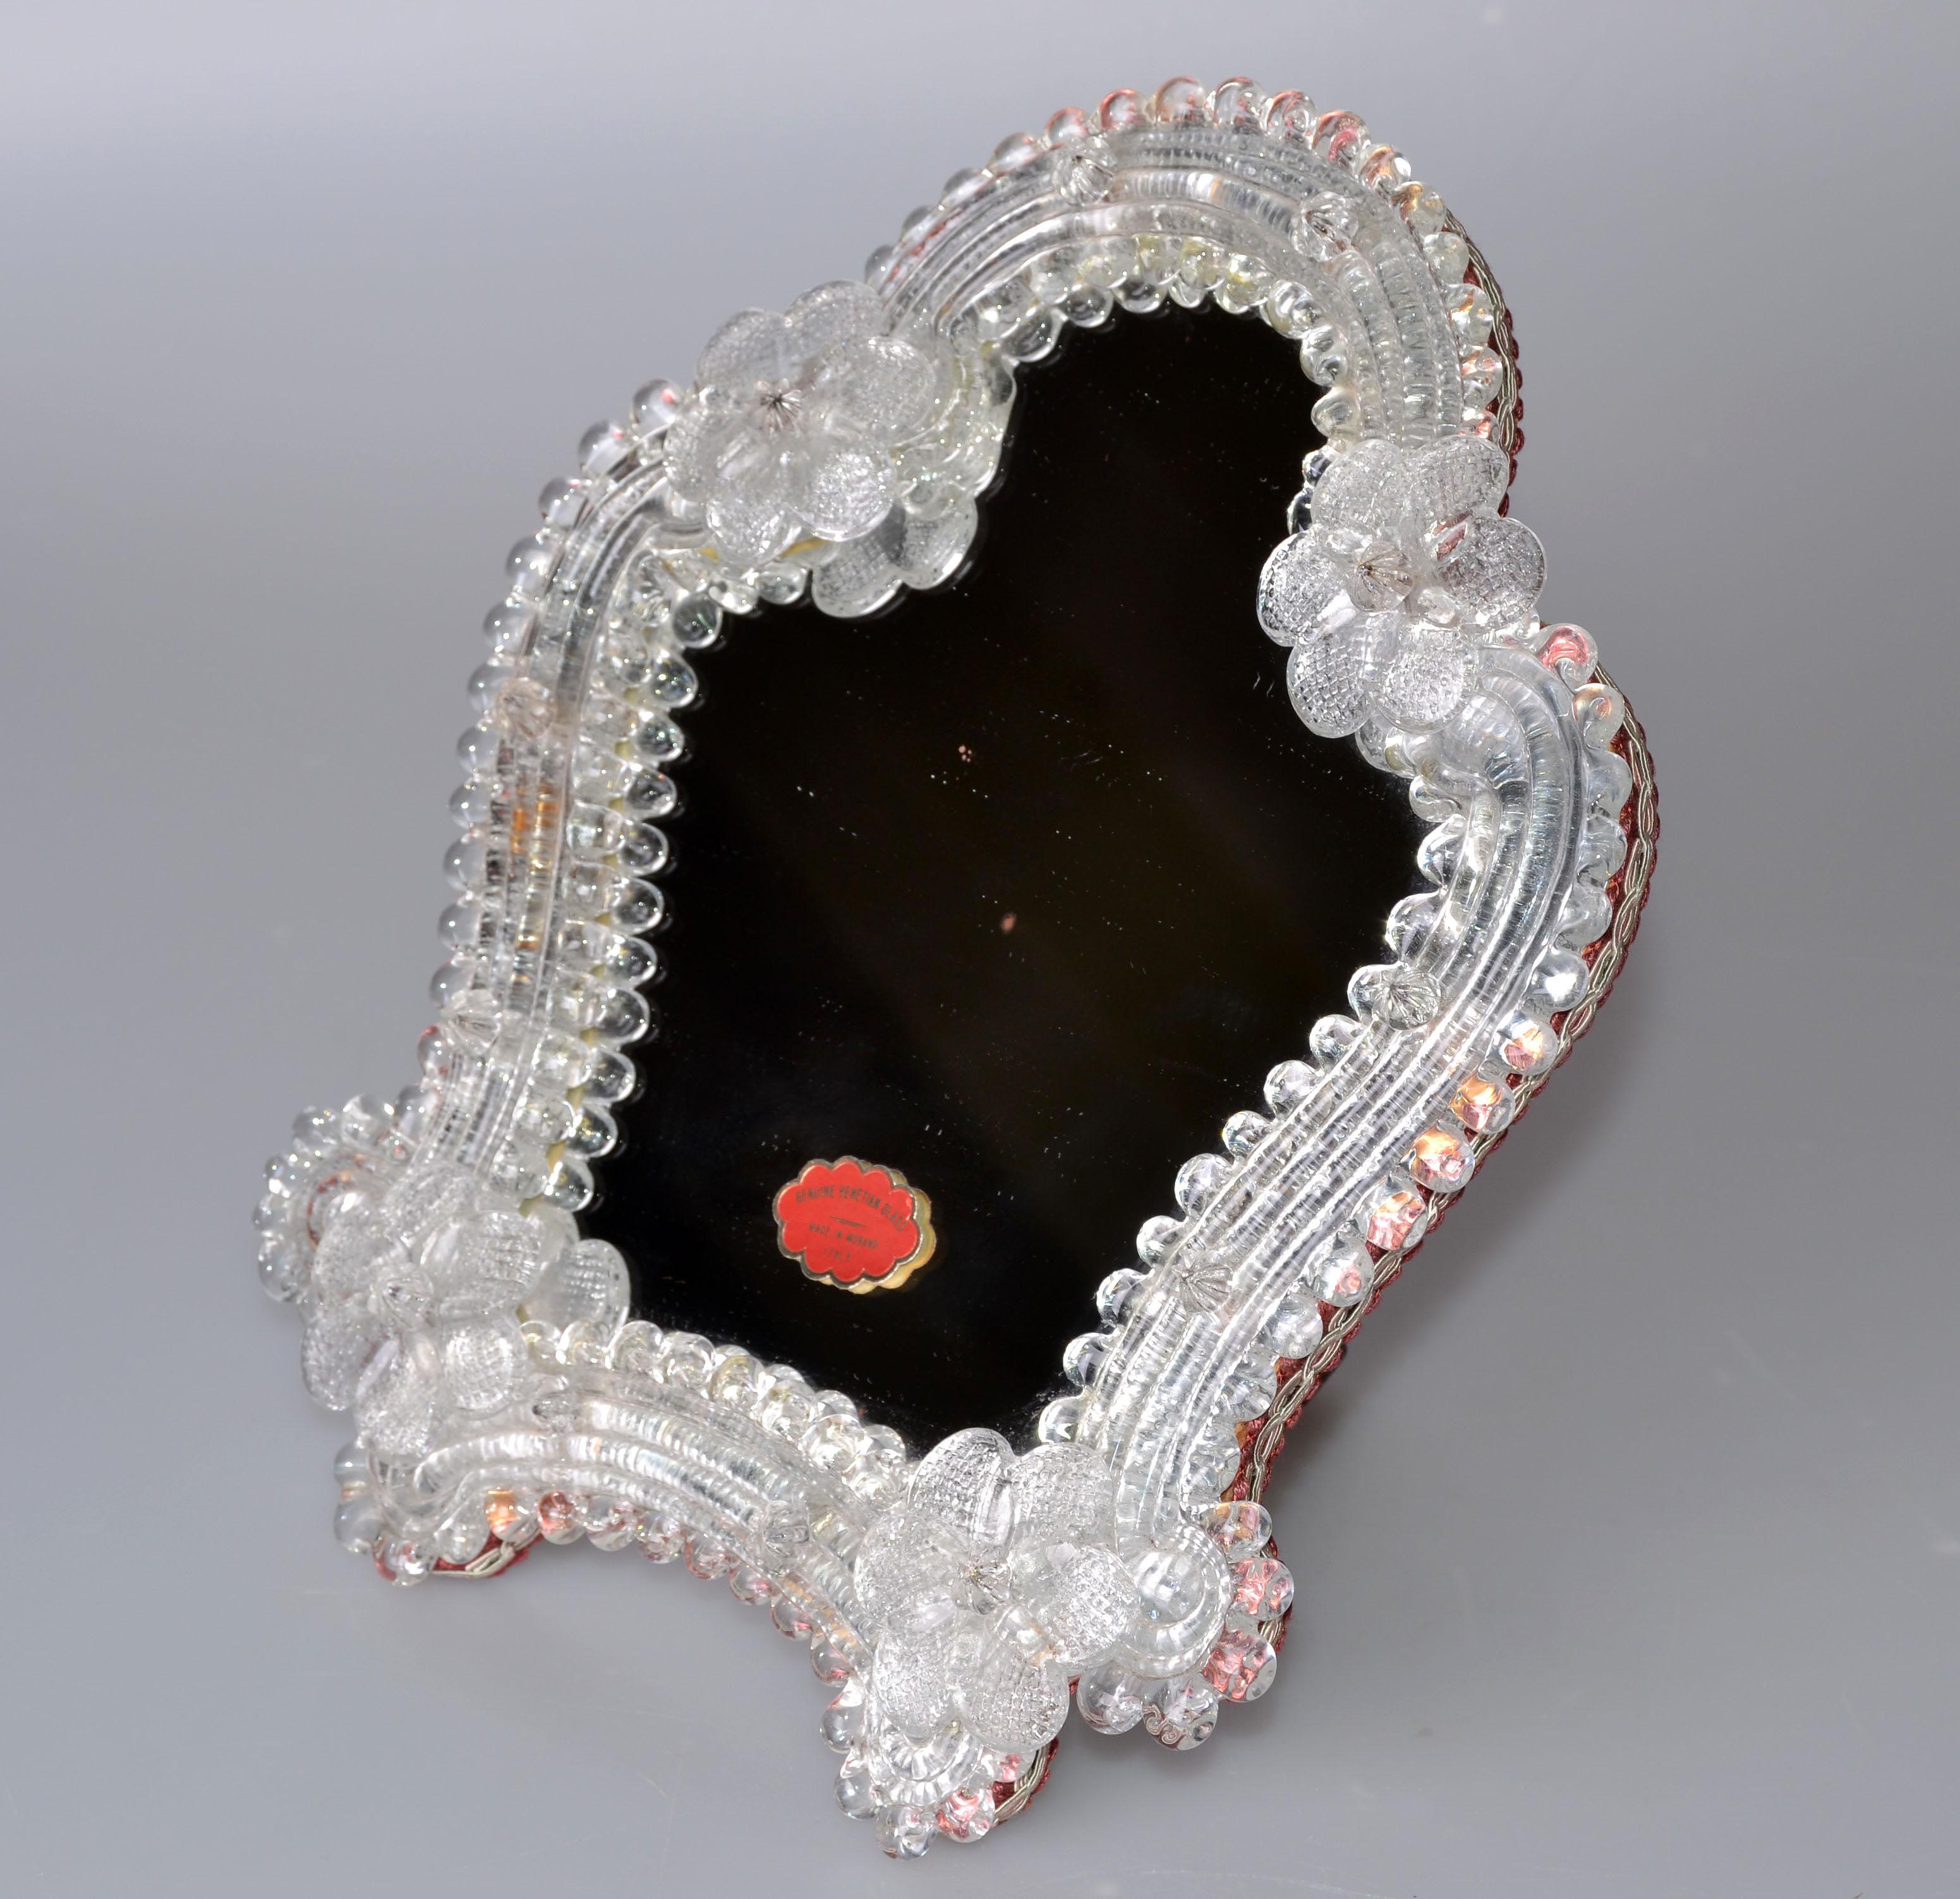 Schöner Tischspiegel aus Murano-Glas aus Italien. 
Mit handgefertigten böhmischen Blumen verziert und mit einem Holzrücken versehen.
Original Label auf dem Spiegel. 
Größe des Spiegels: 6 Zoll x 7 Zoll.